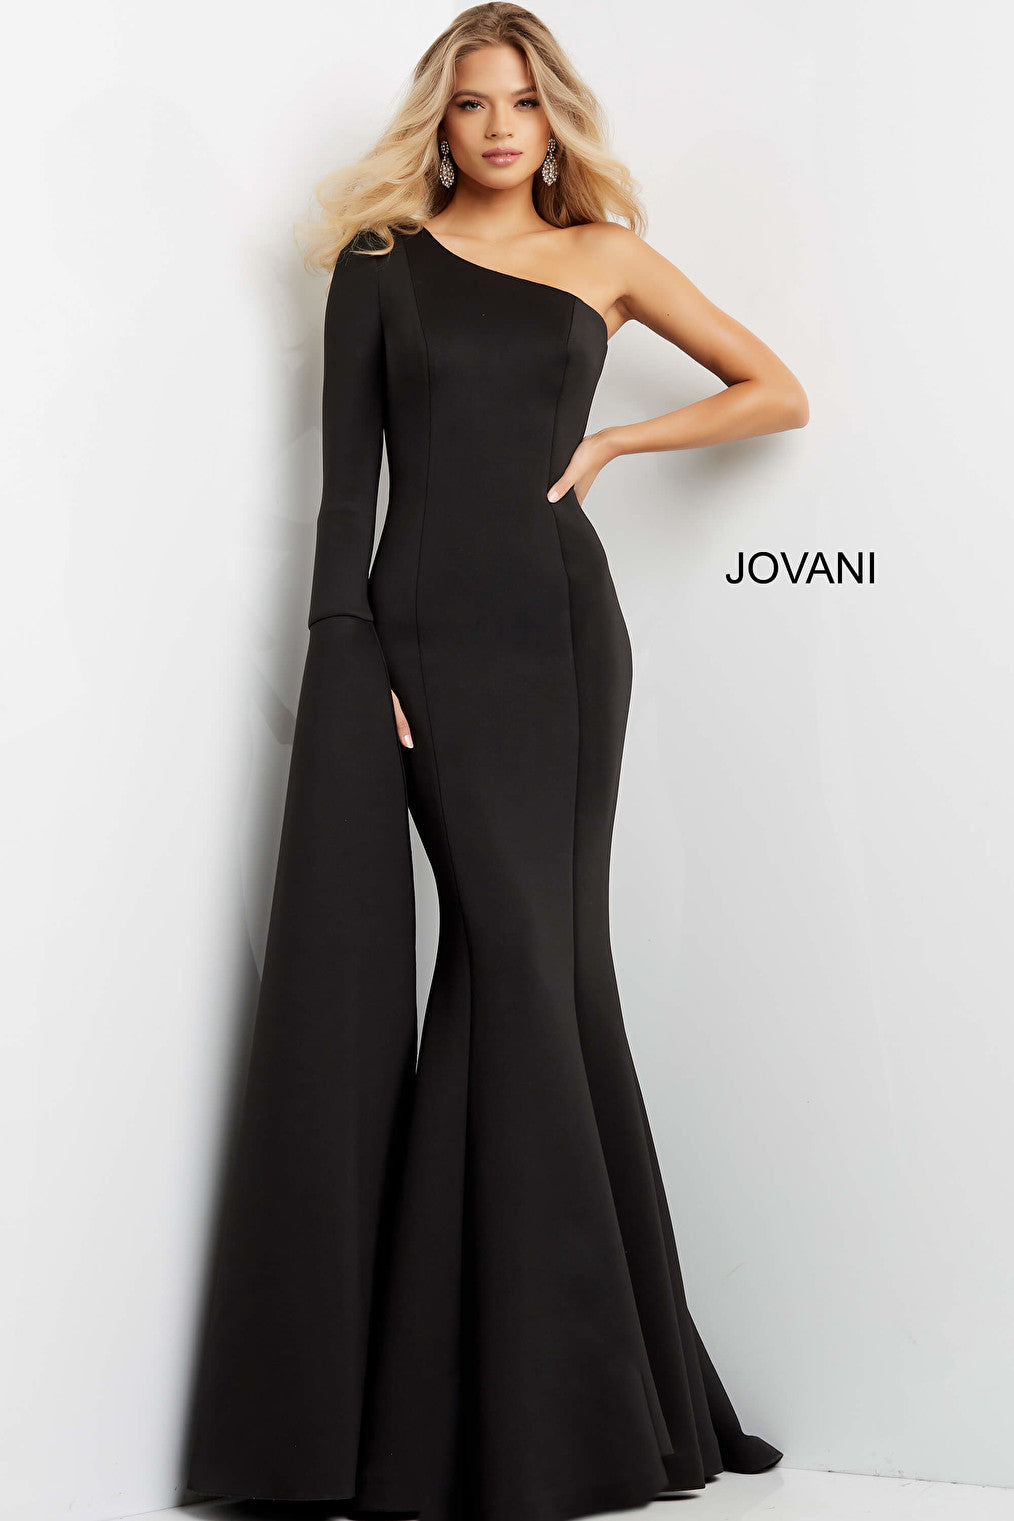 Jovani 07128 Black One Shoulder Long Sleeve Evening Gown